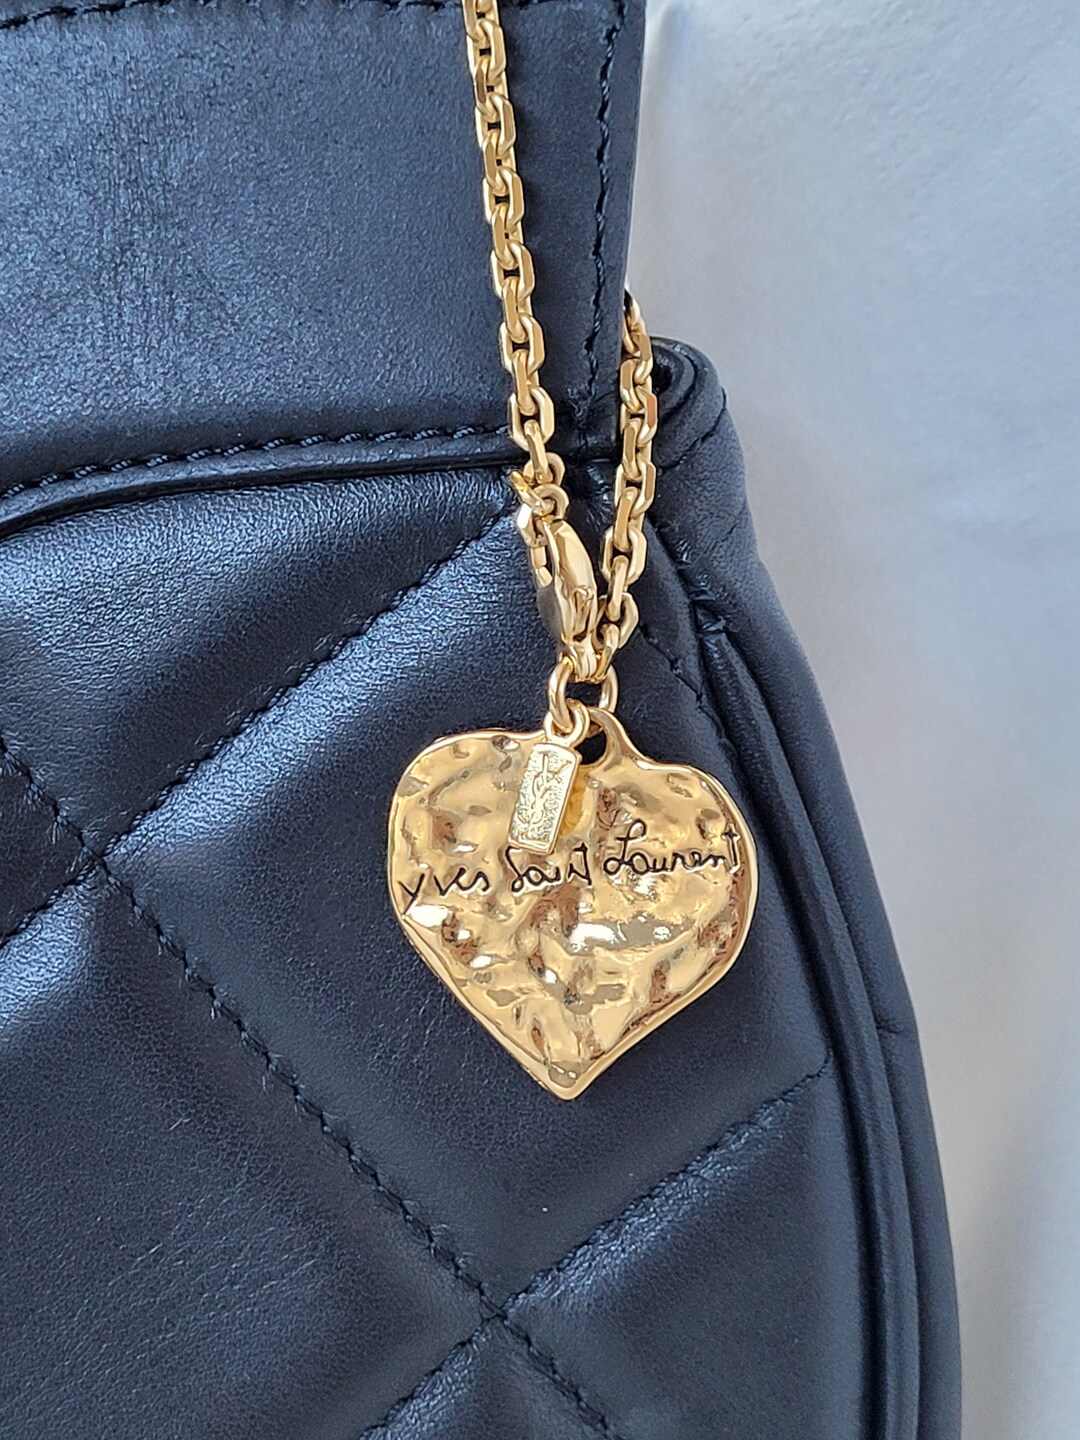 Yves Saint Laurent Bag Charm or Key Ring -  Sweden